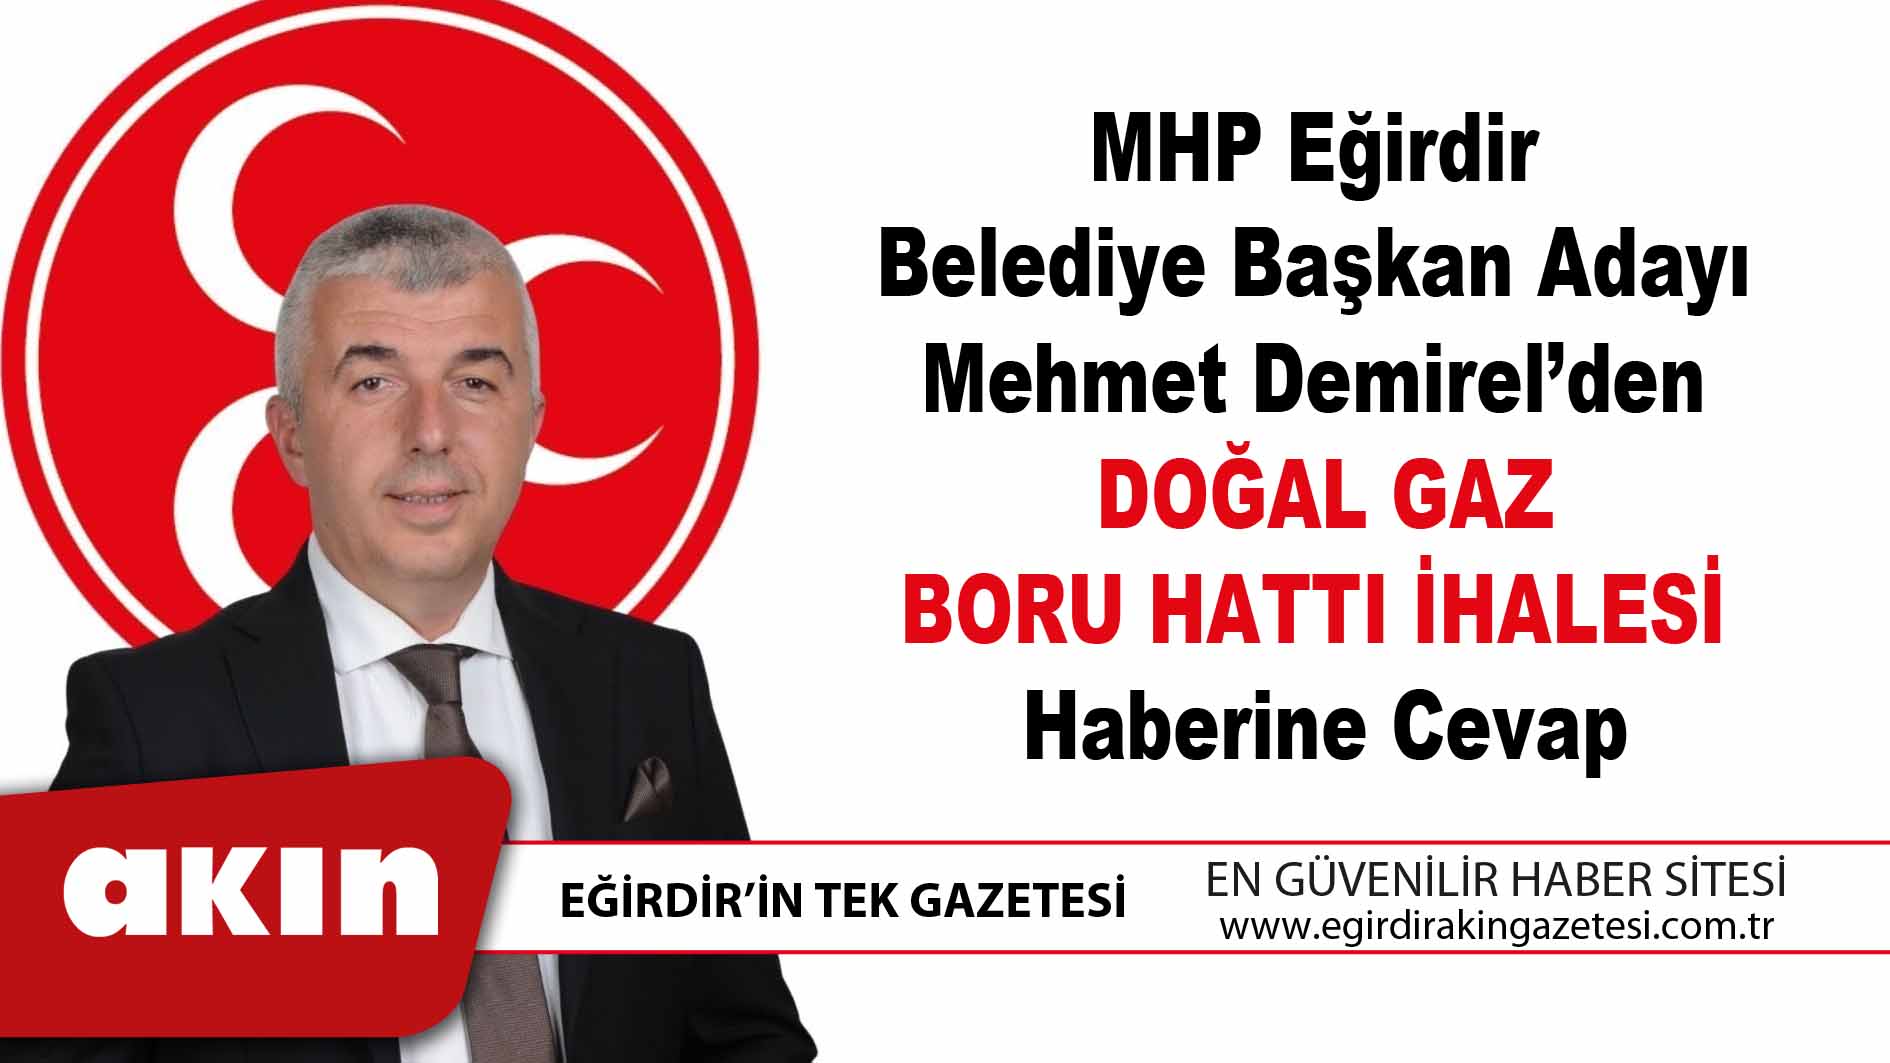 eğirdir haber,akın gazetesi,egirdir haberler,son dakika,MHP Eğirdir Belediye Başkan Adayı Mehmet Demirel’den "Doğal Gaz Boru Hattı İhalesi" Haberine Cevap